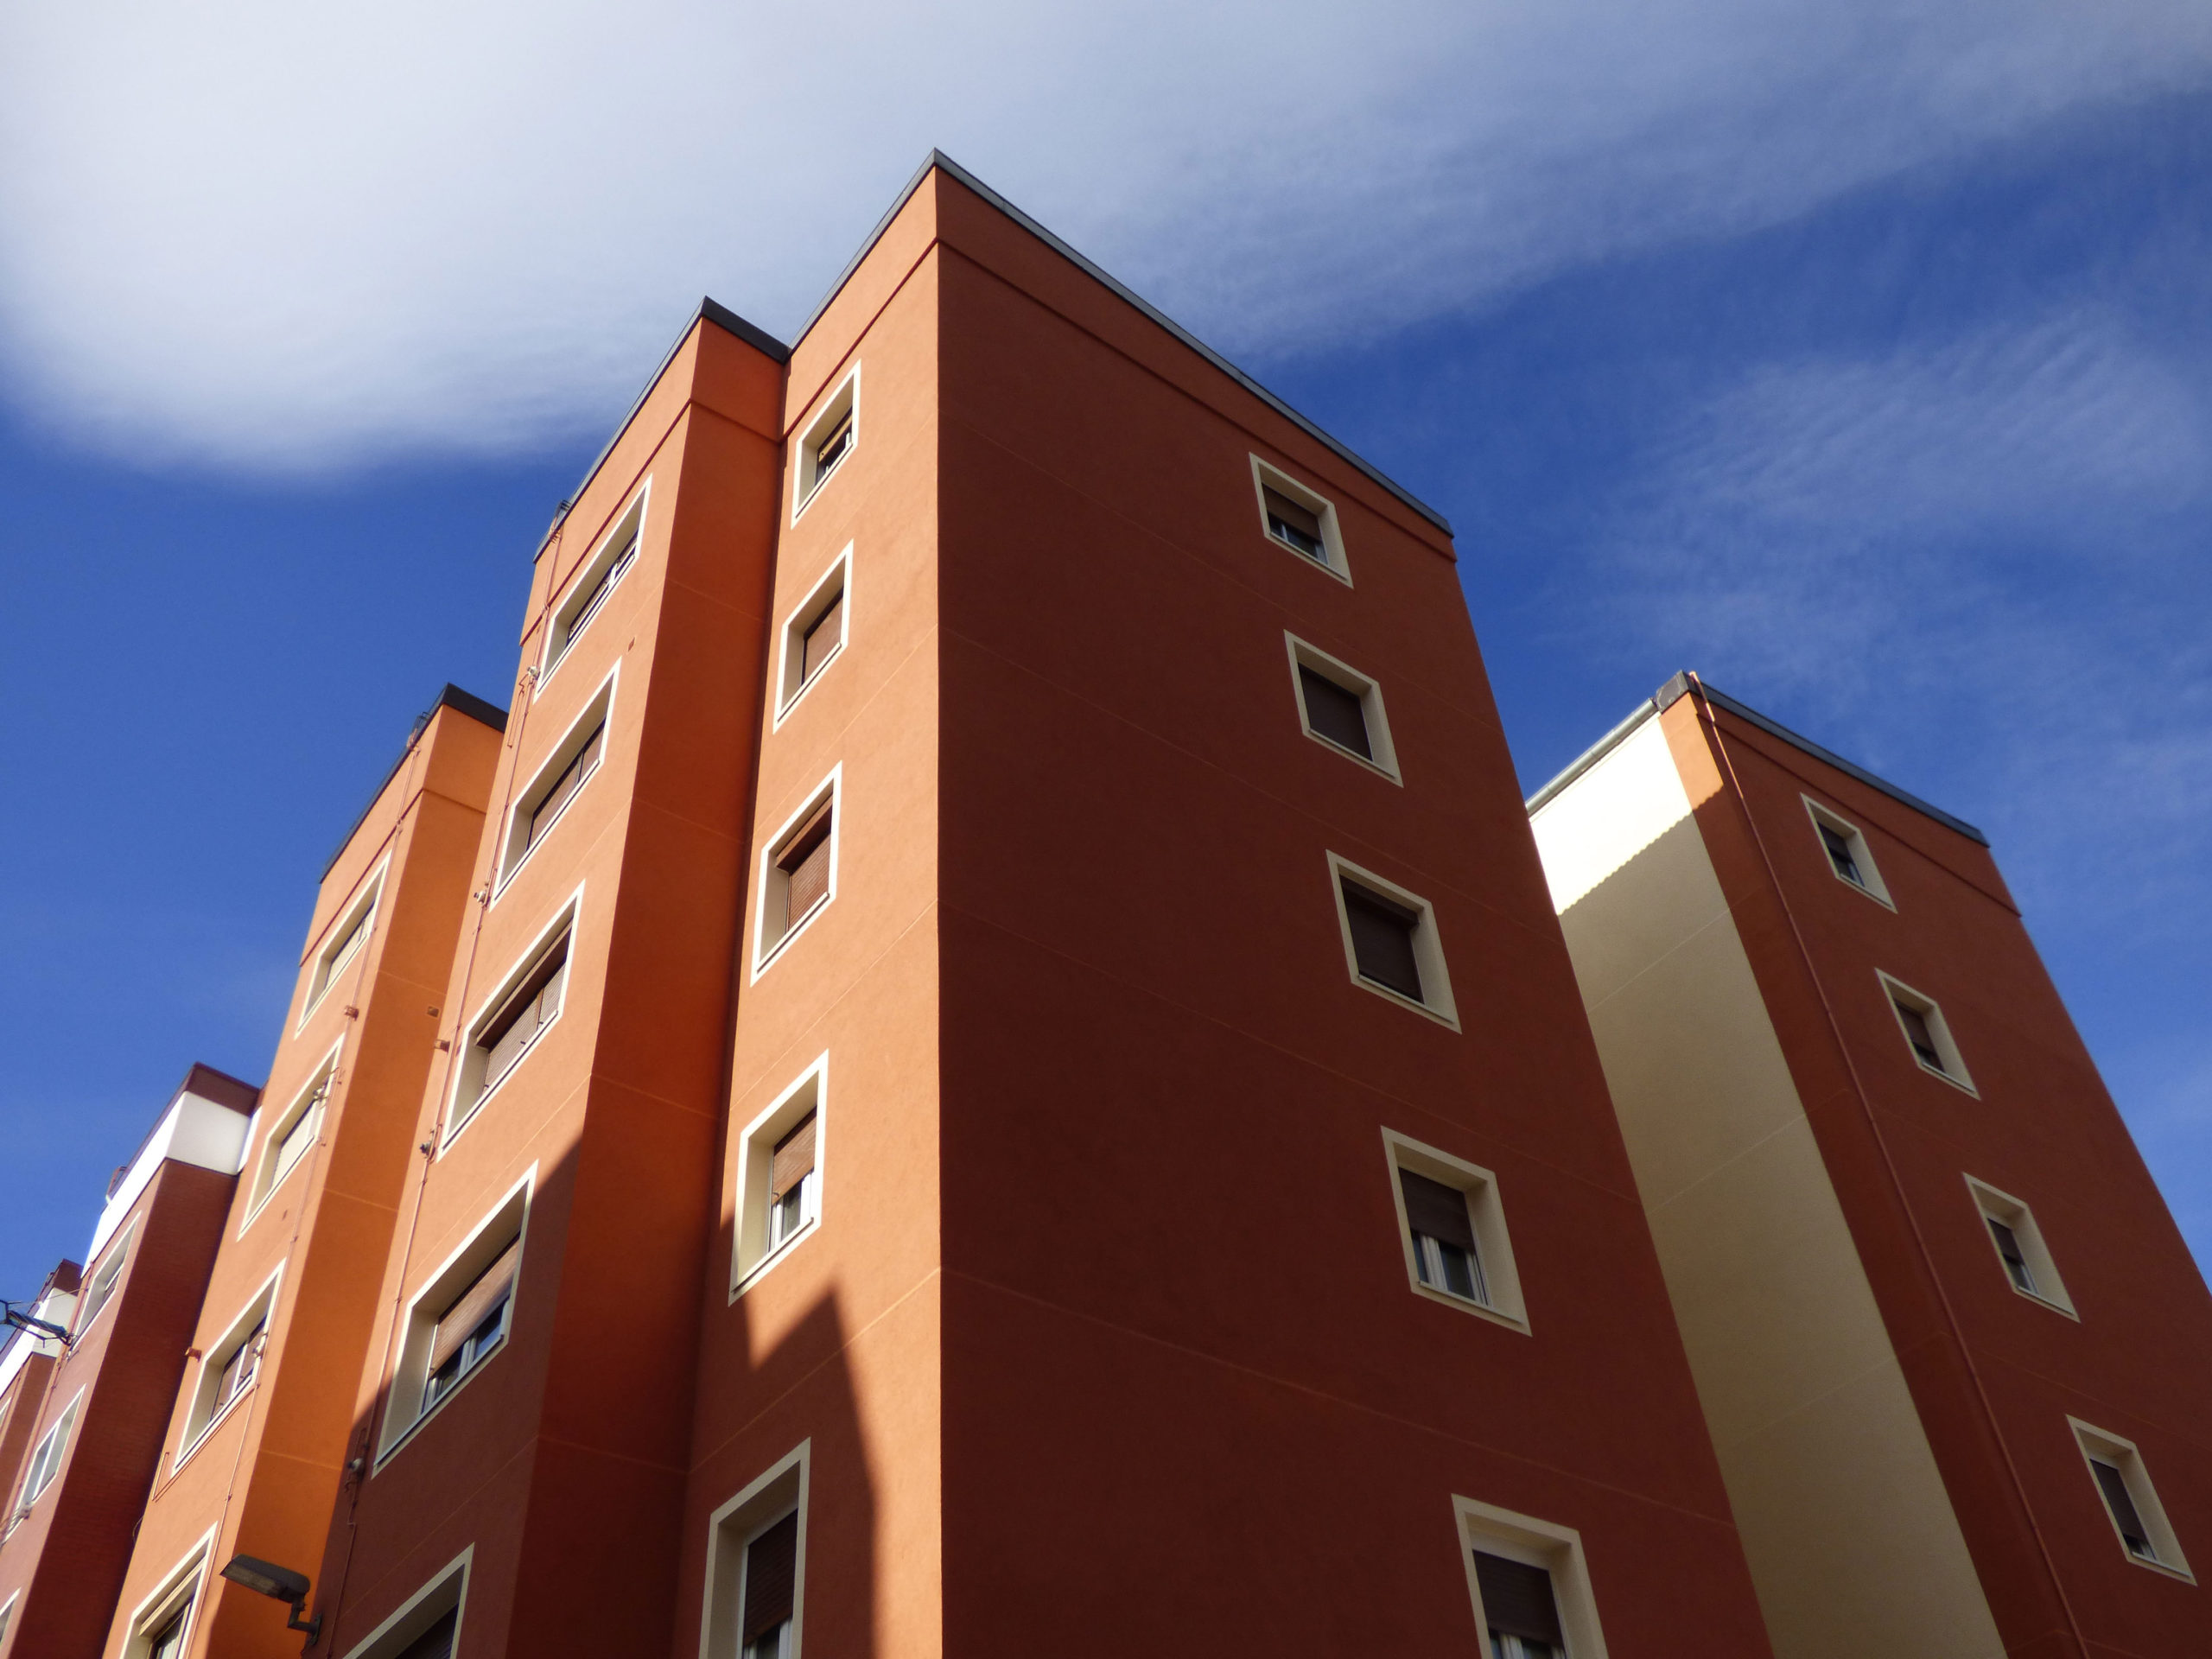 Rehabilitación energética de fachadas y cubierta en Barakaldo